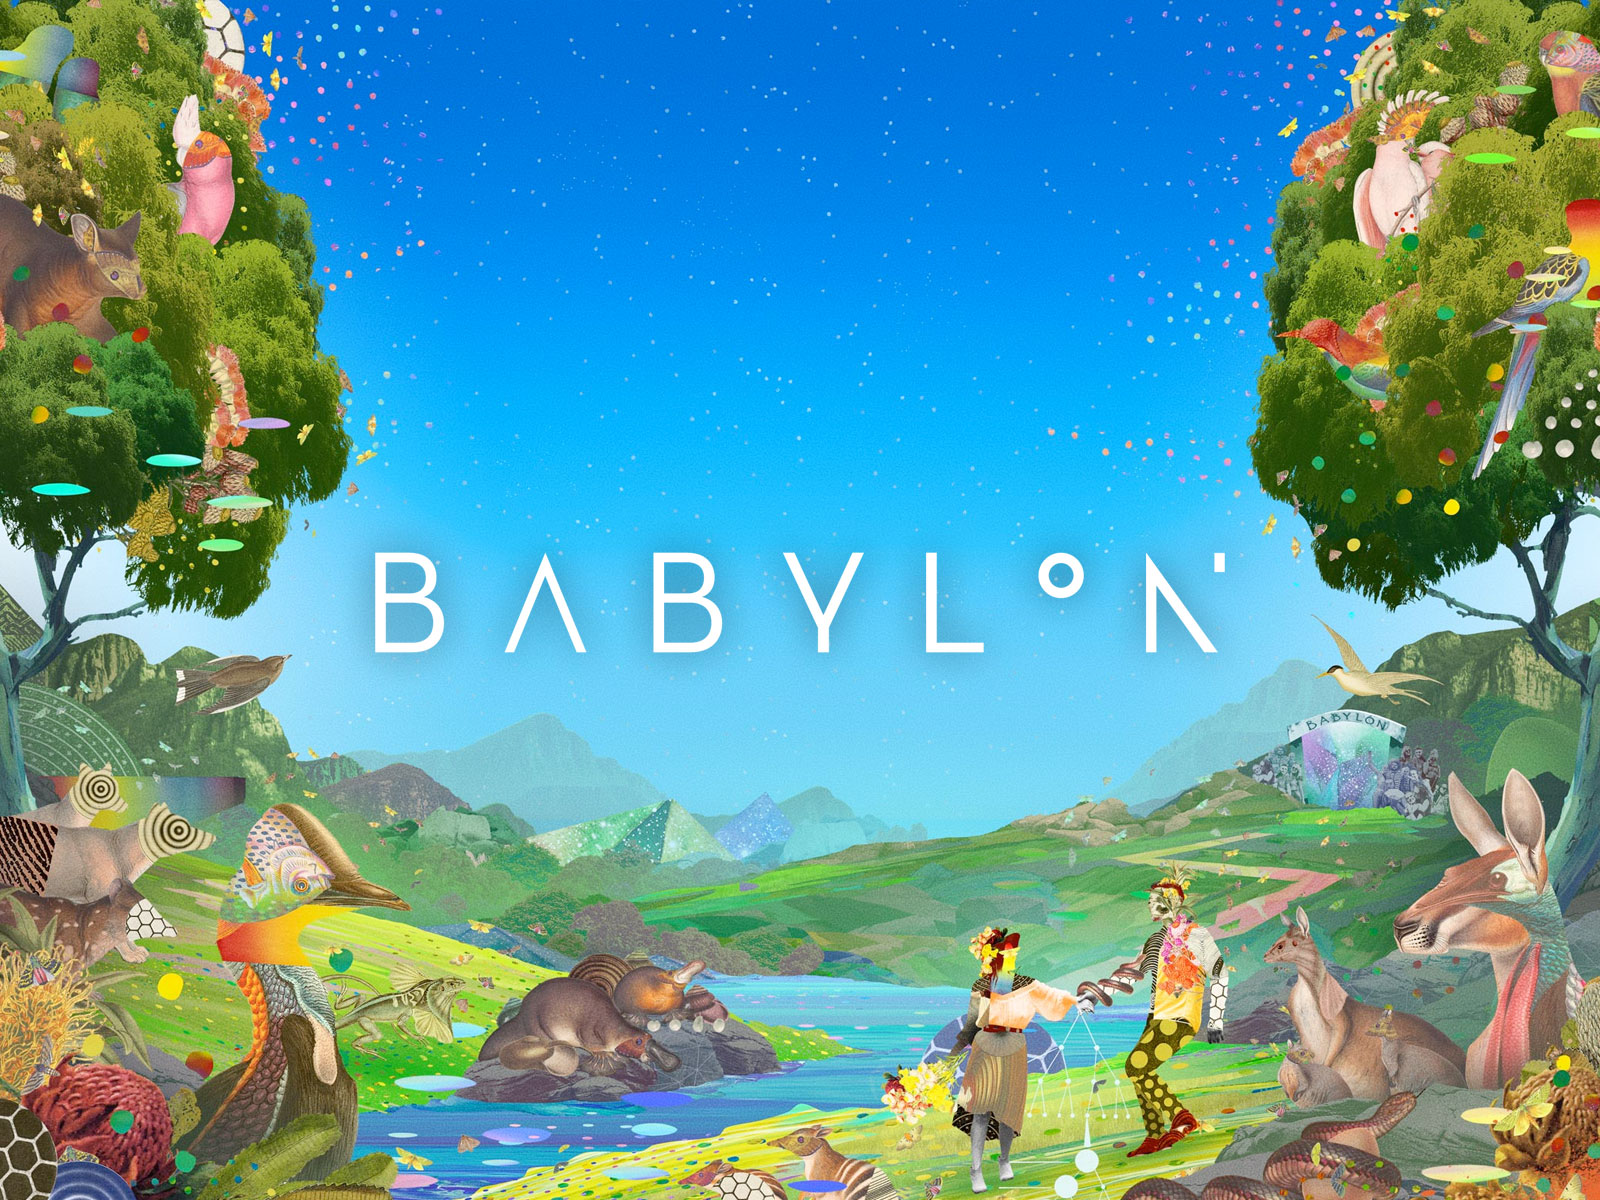 babylon-2020-lineup-oz-edm-feature